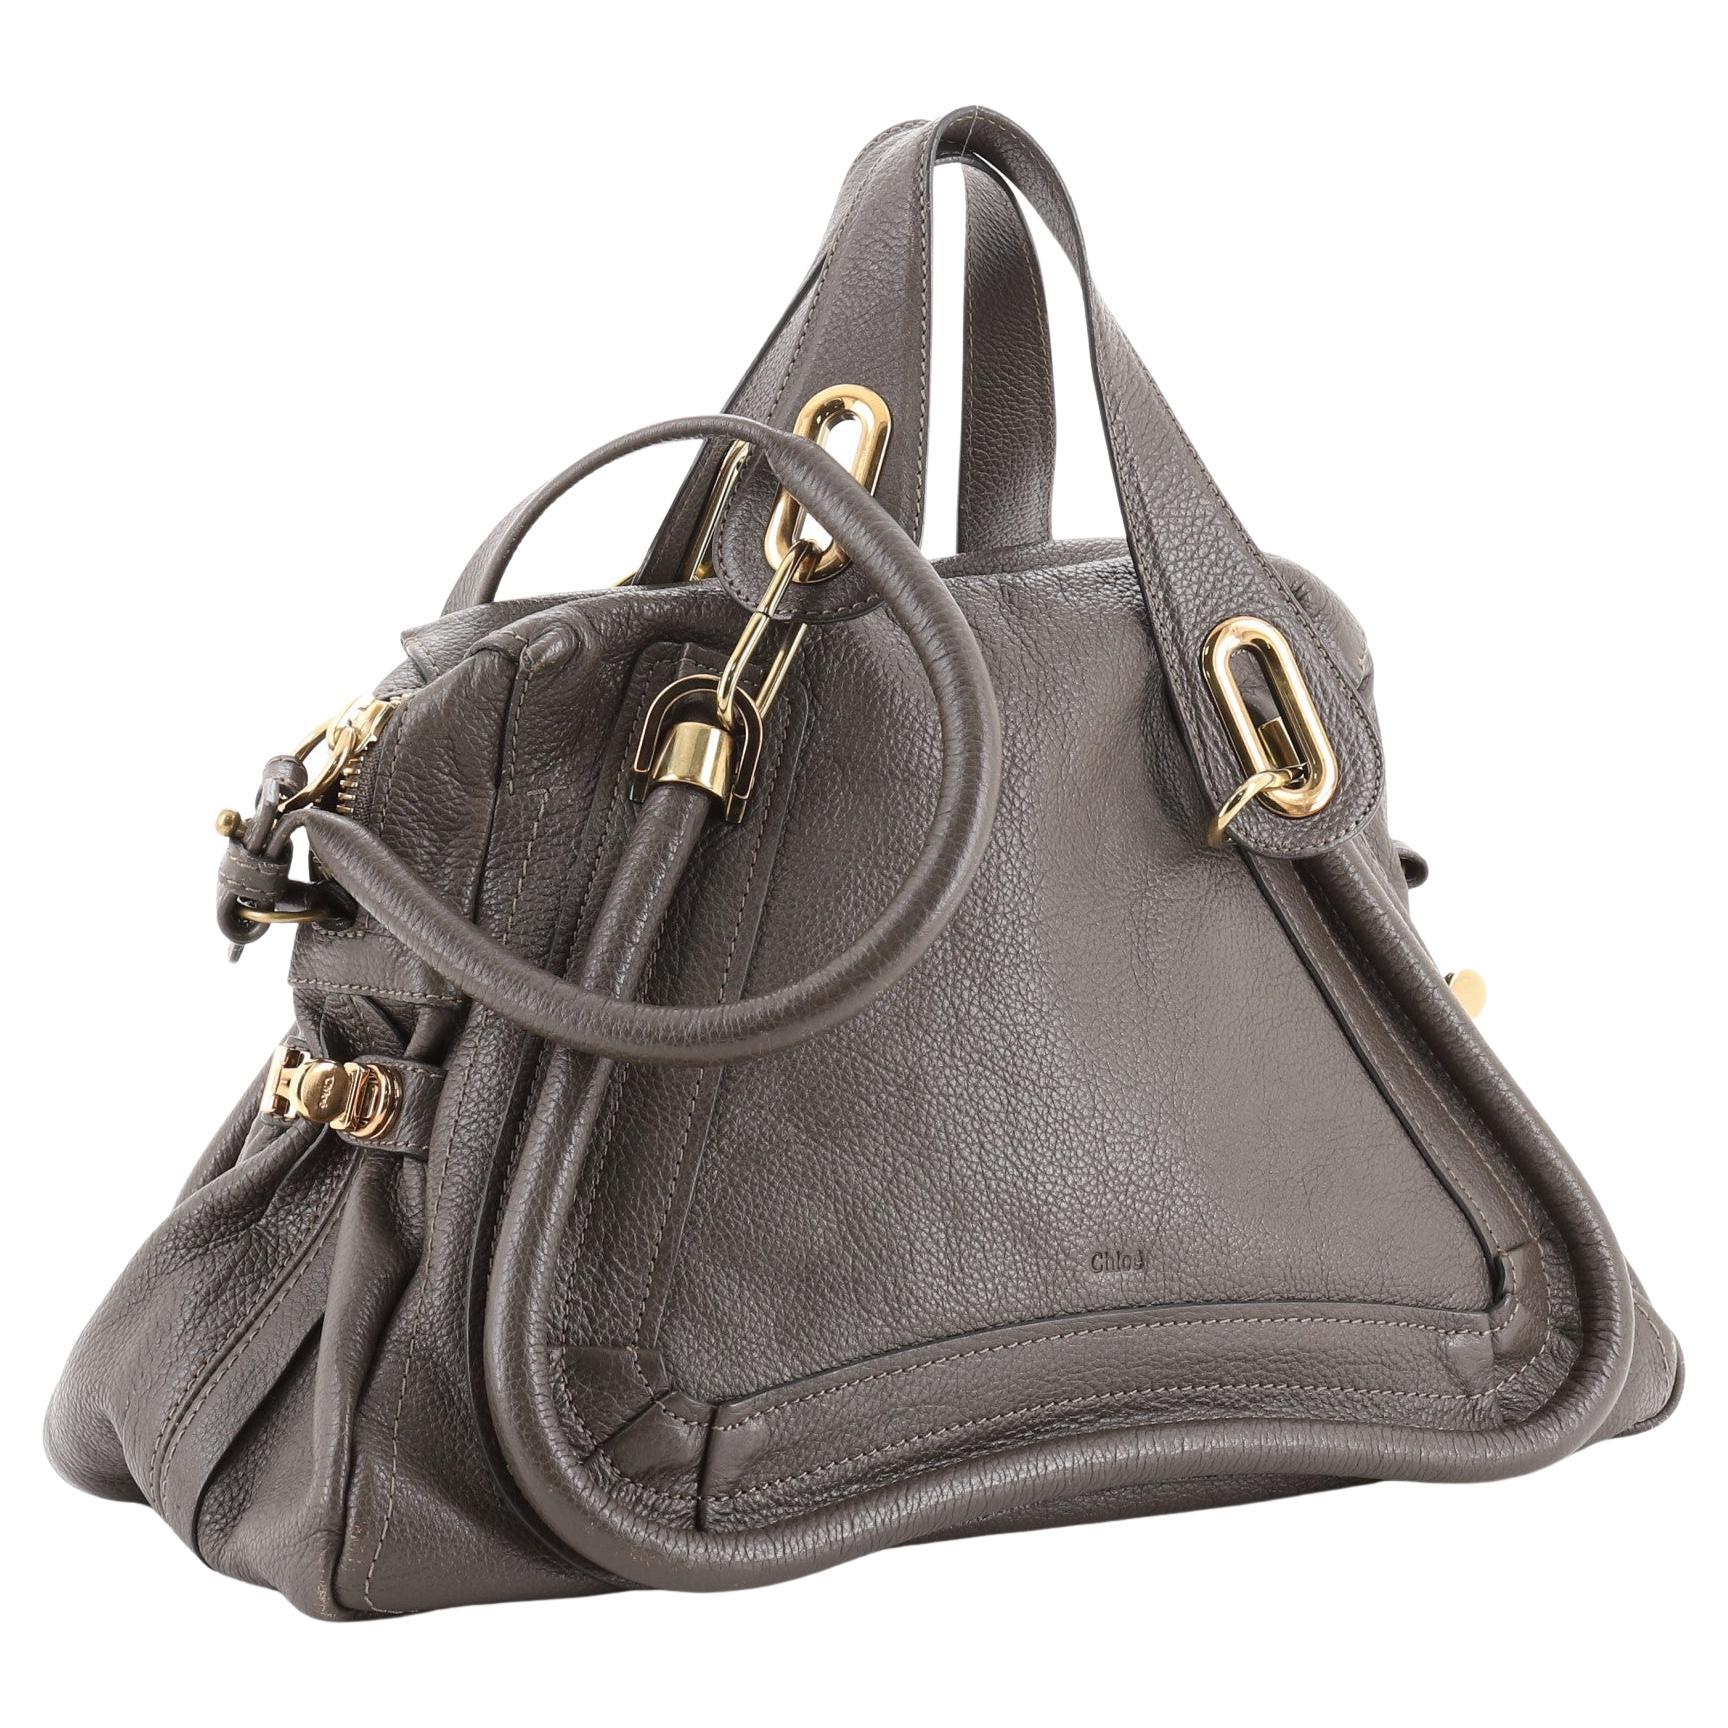 Taschen Handtaschen Chloé Chloe Paraty Leather Handbag 